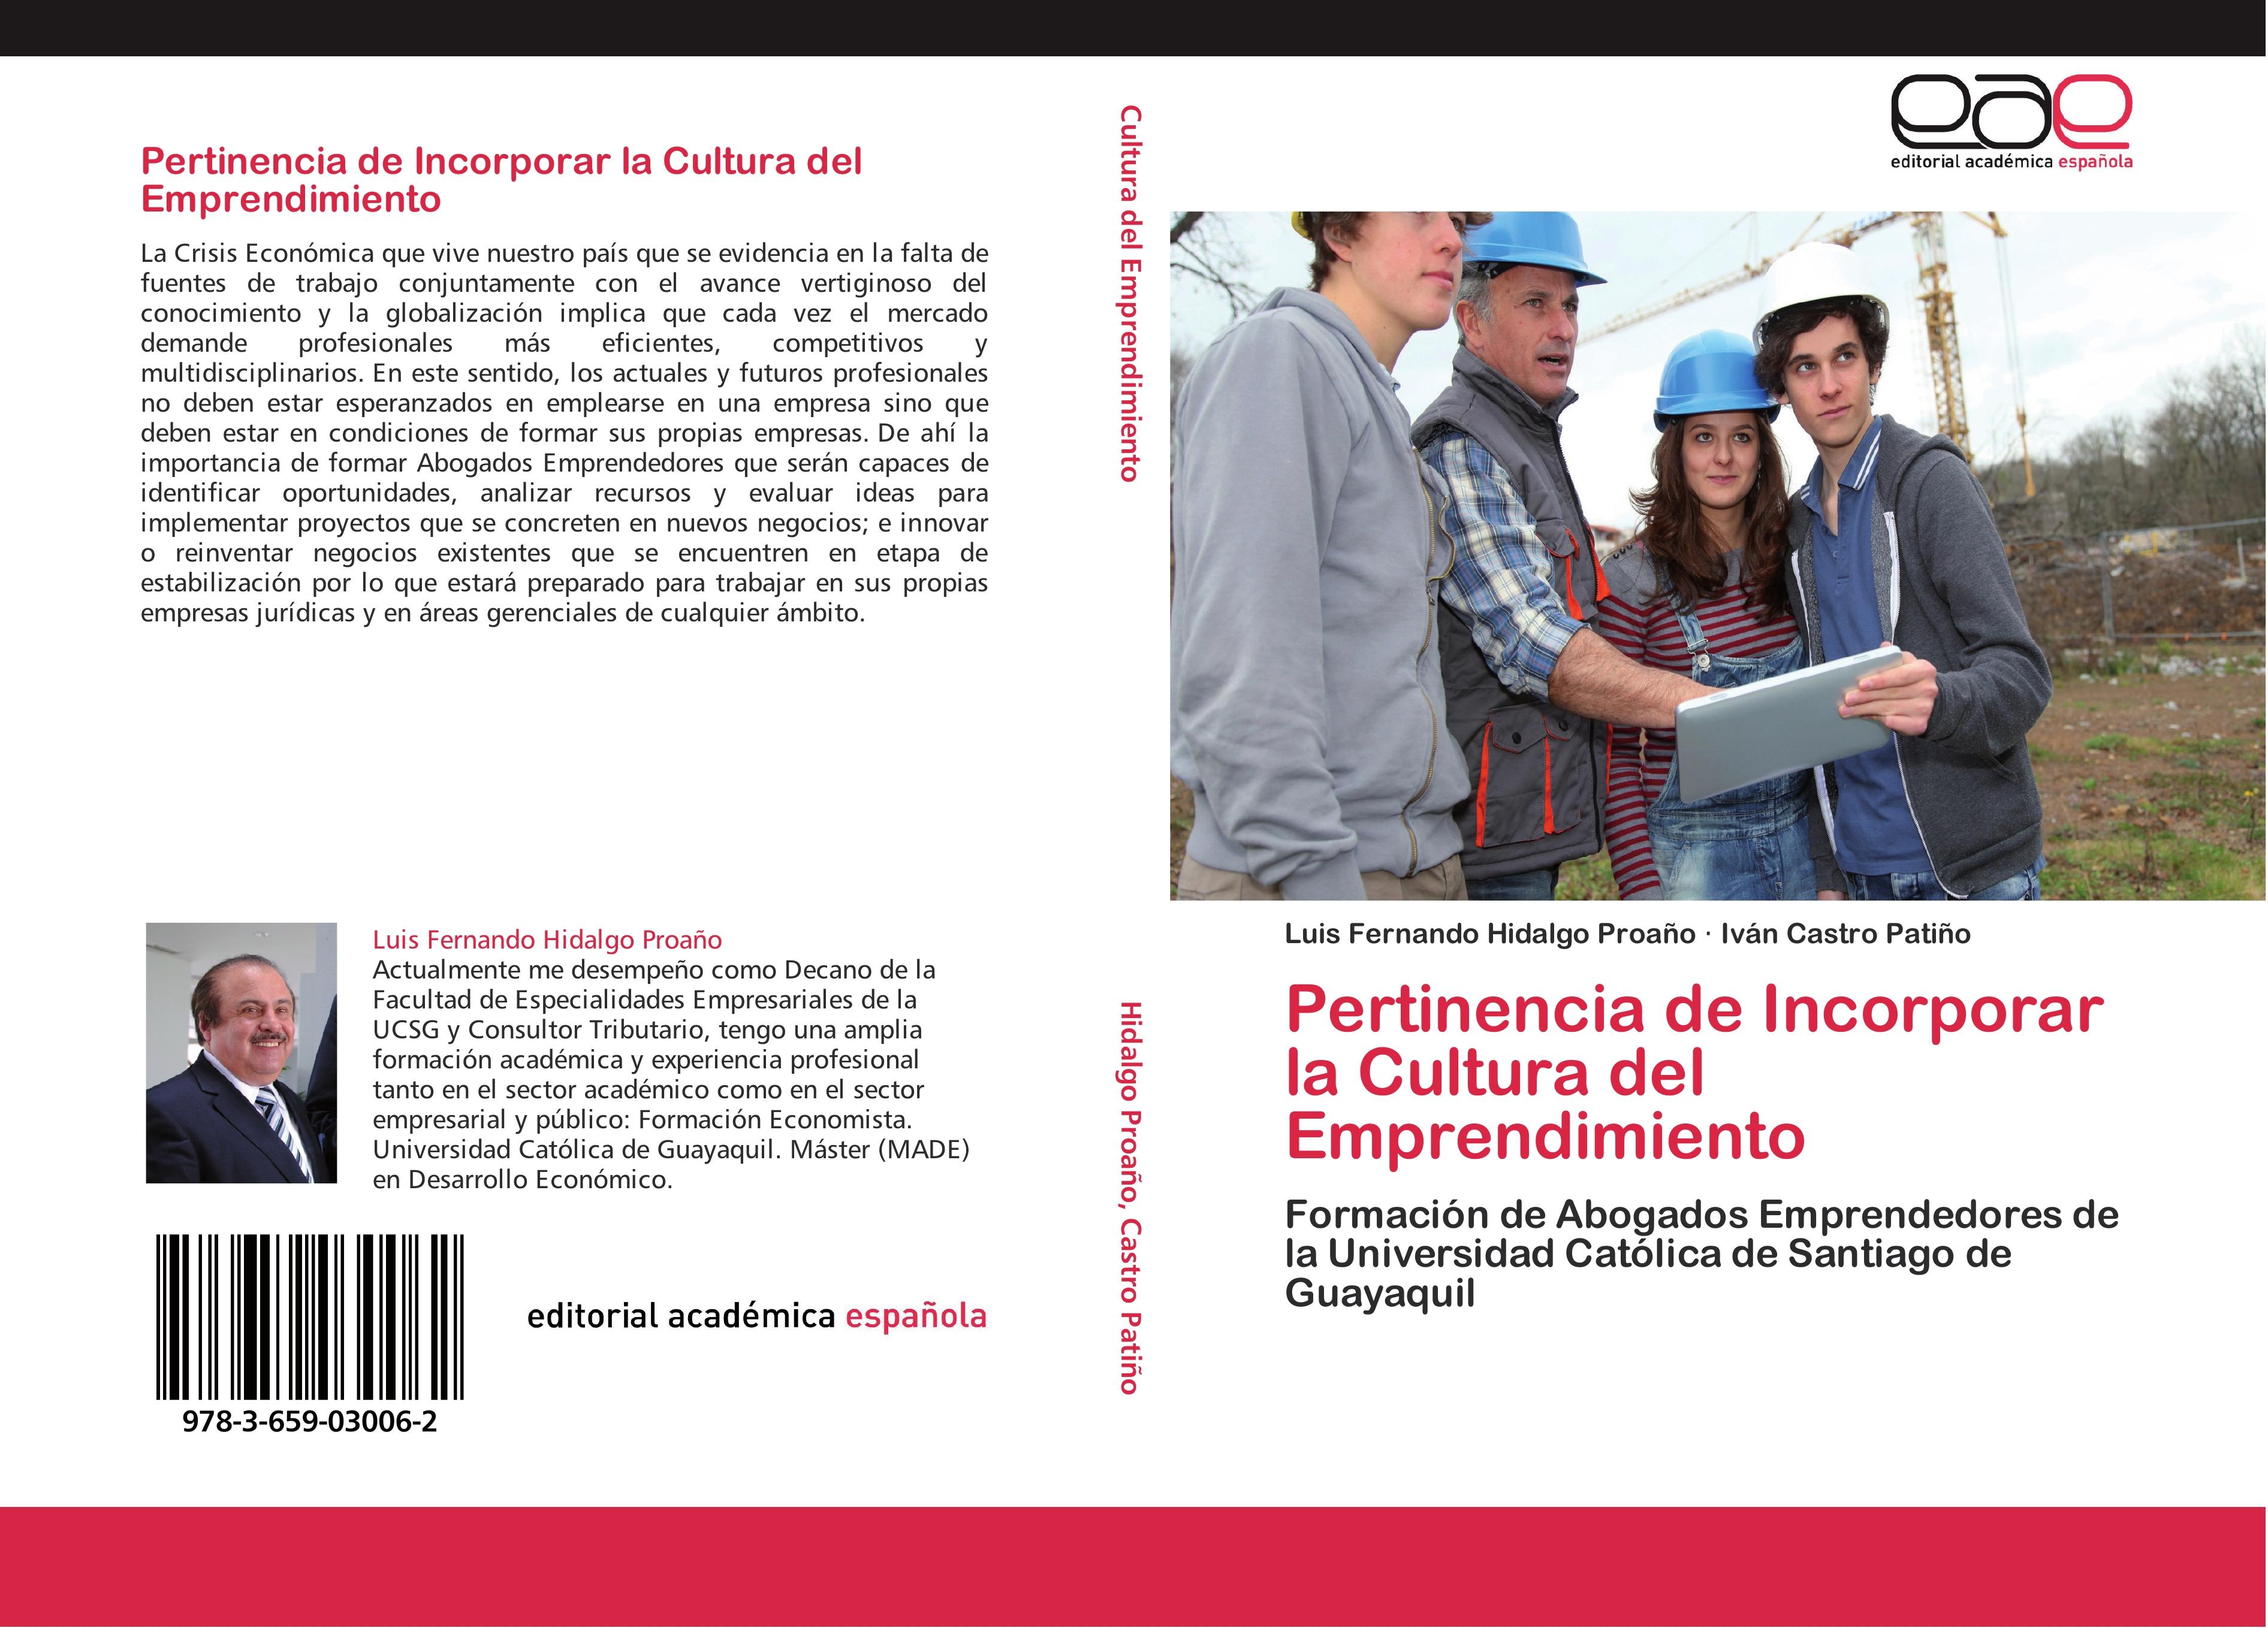 Pertinencia de Incorporar la Cultura del Emprendimiento - Luis Fernando Hidalgo Proaño|Iván Castro Patiño